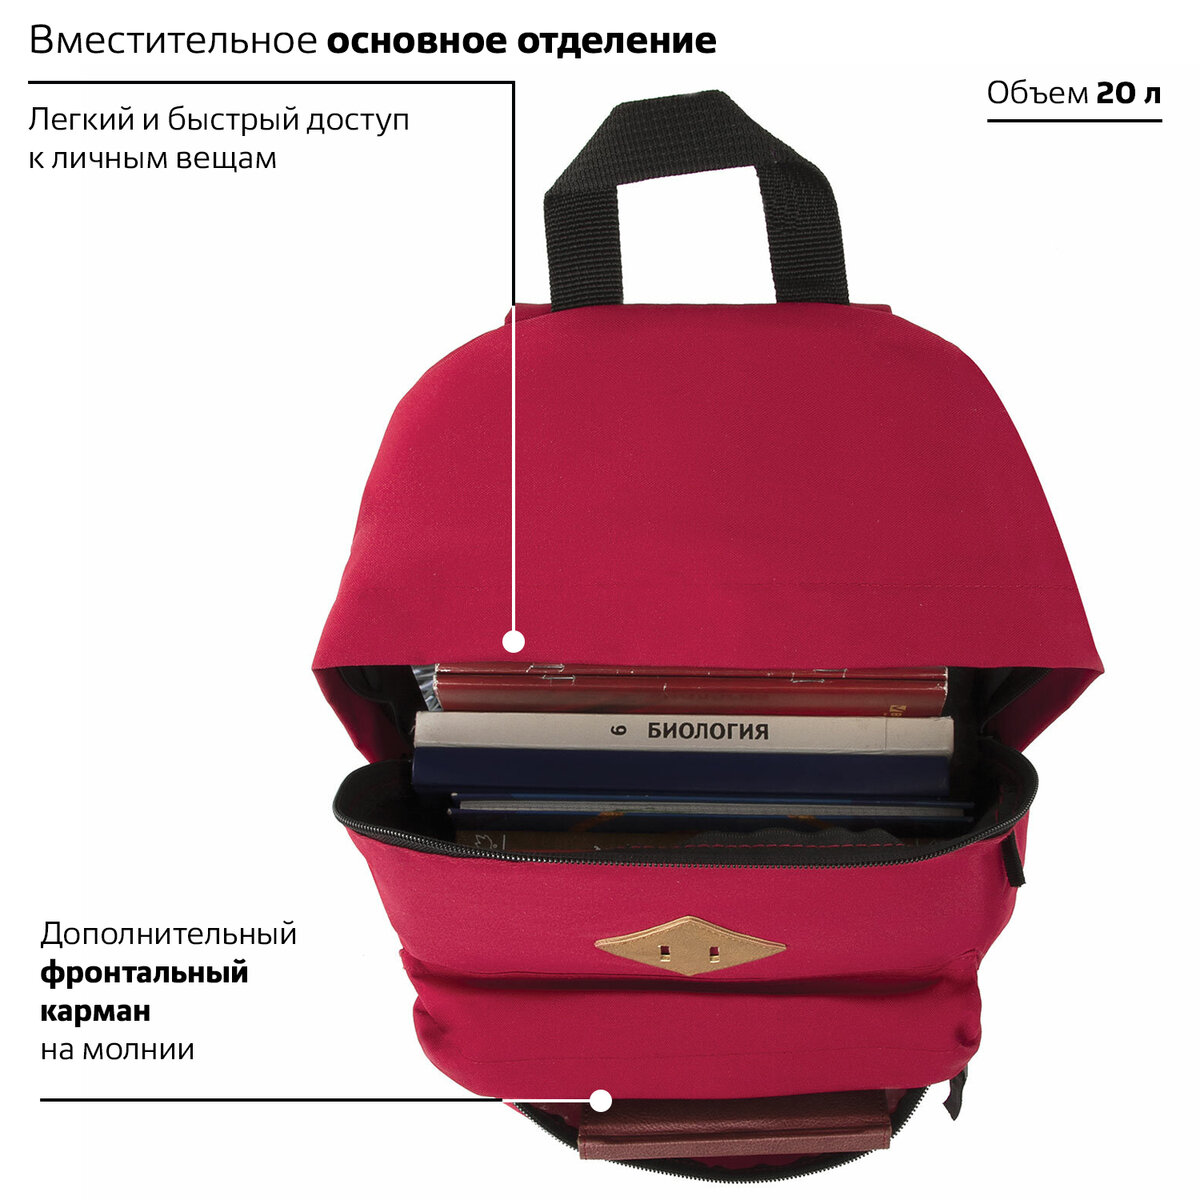 Рюкзак Brauberg универсальный сити-формат один тон красный - фото 5